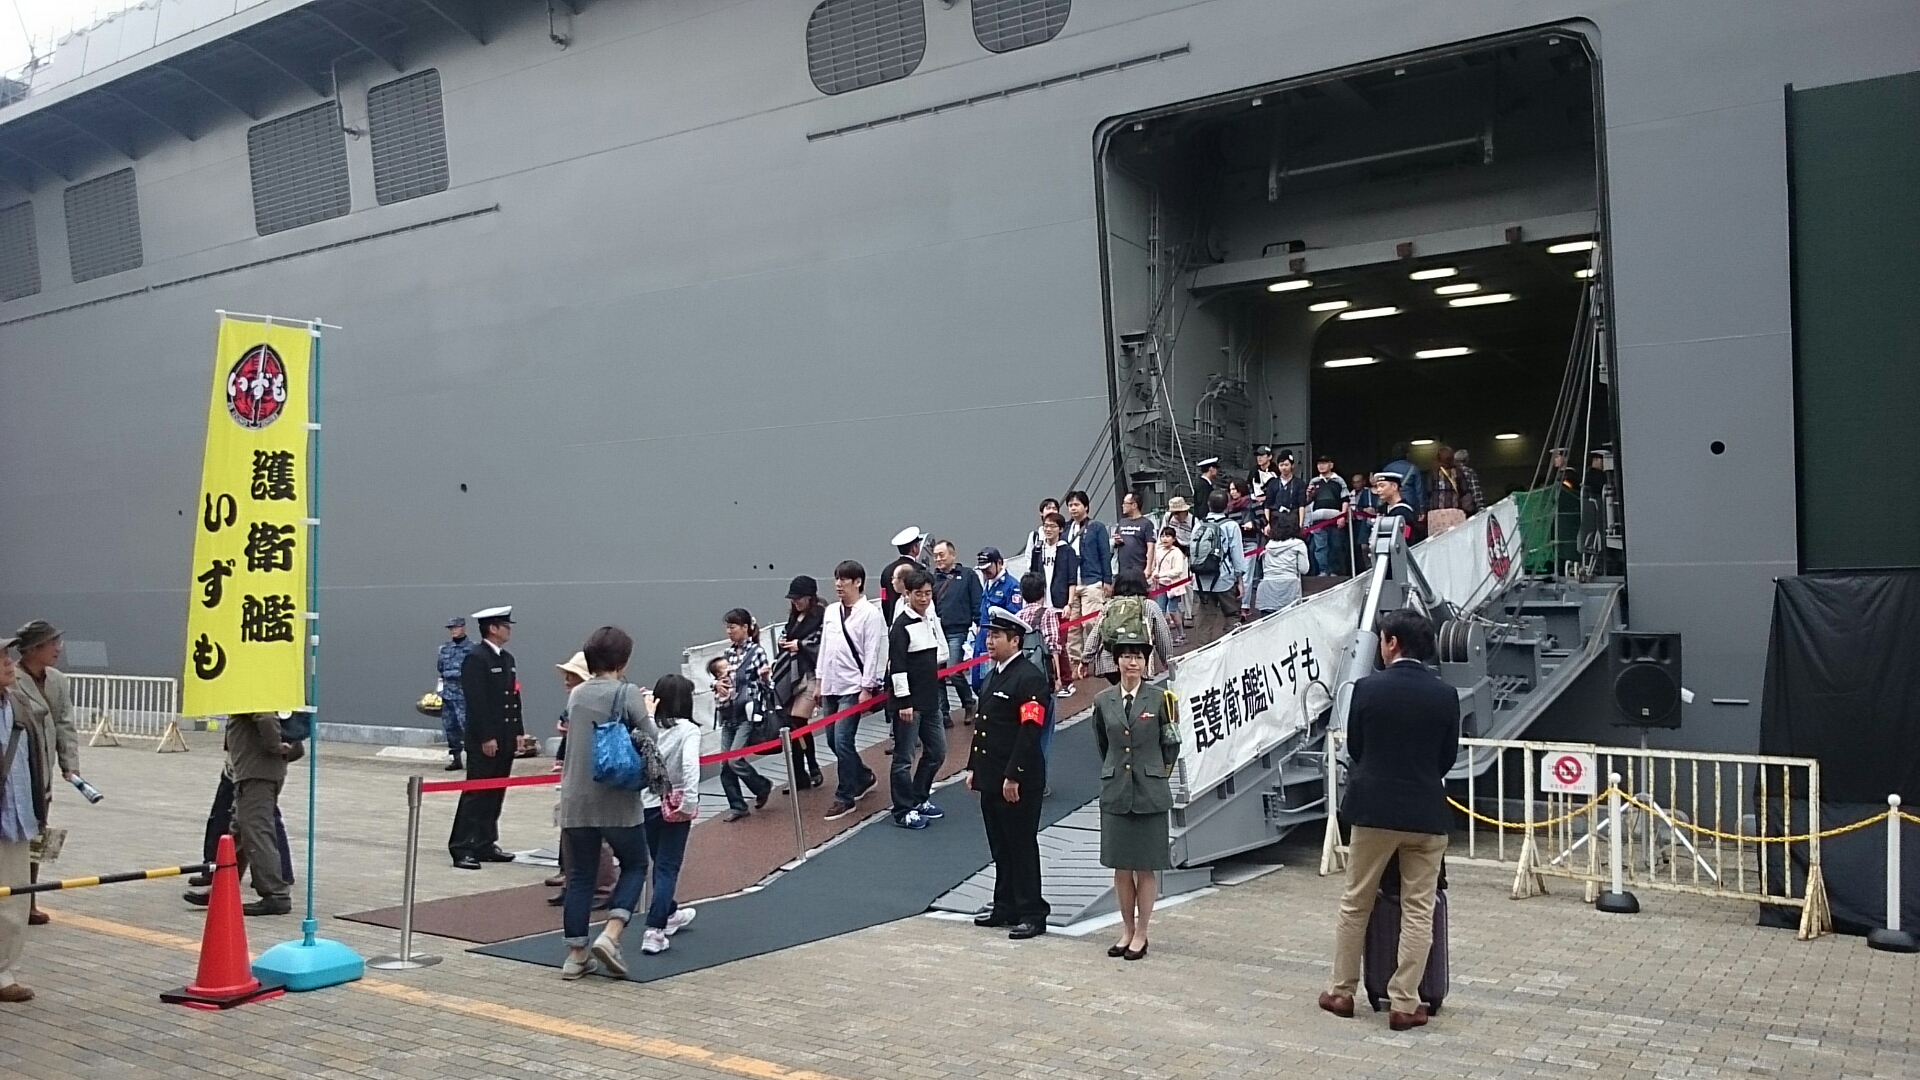 観艦式 海上自衛隊 護衛艦 いずも 一般公開 １０月１０日 横浜大桟橋 ぱんこの撮影日記 分館